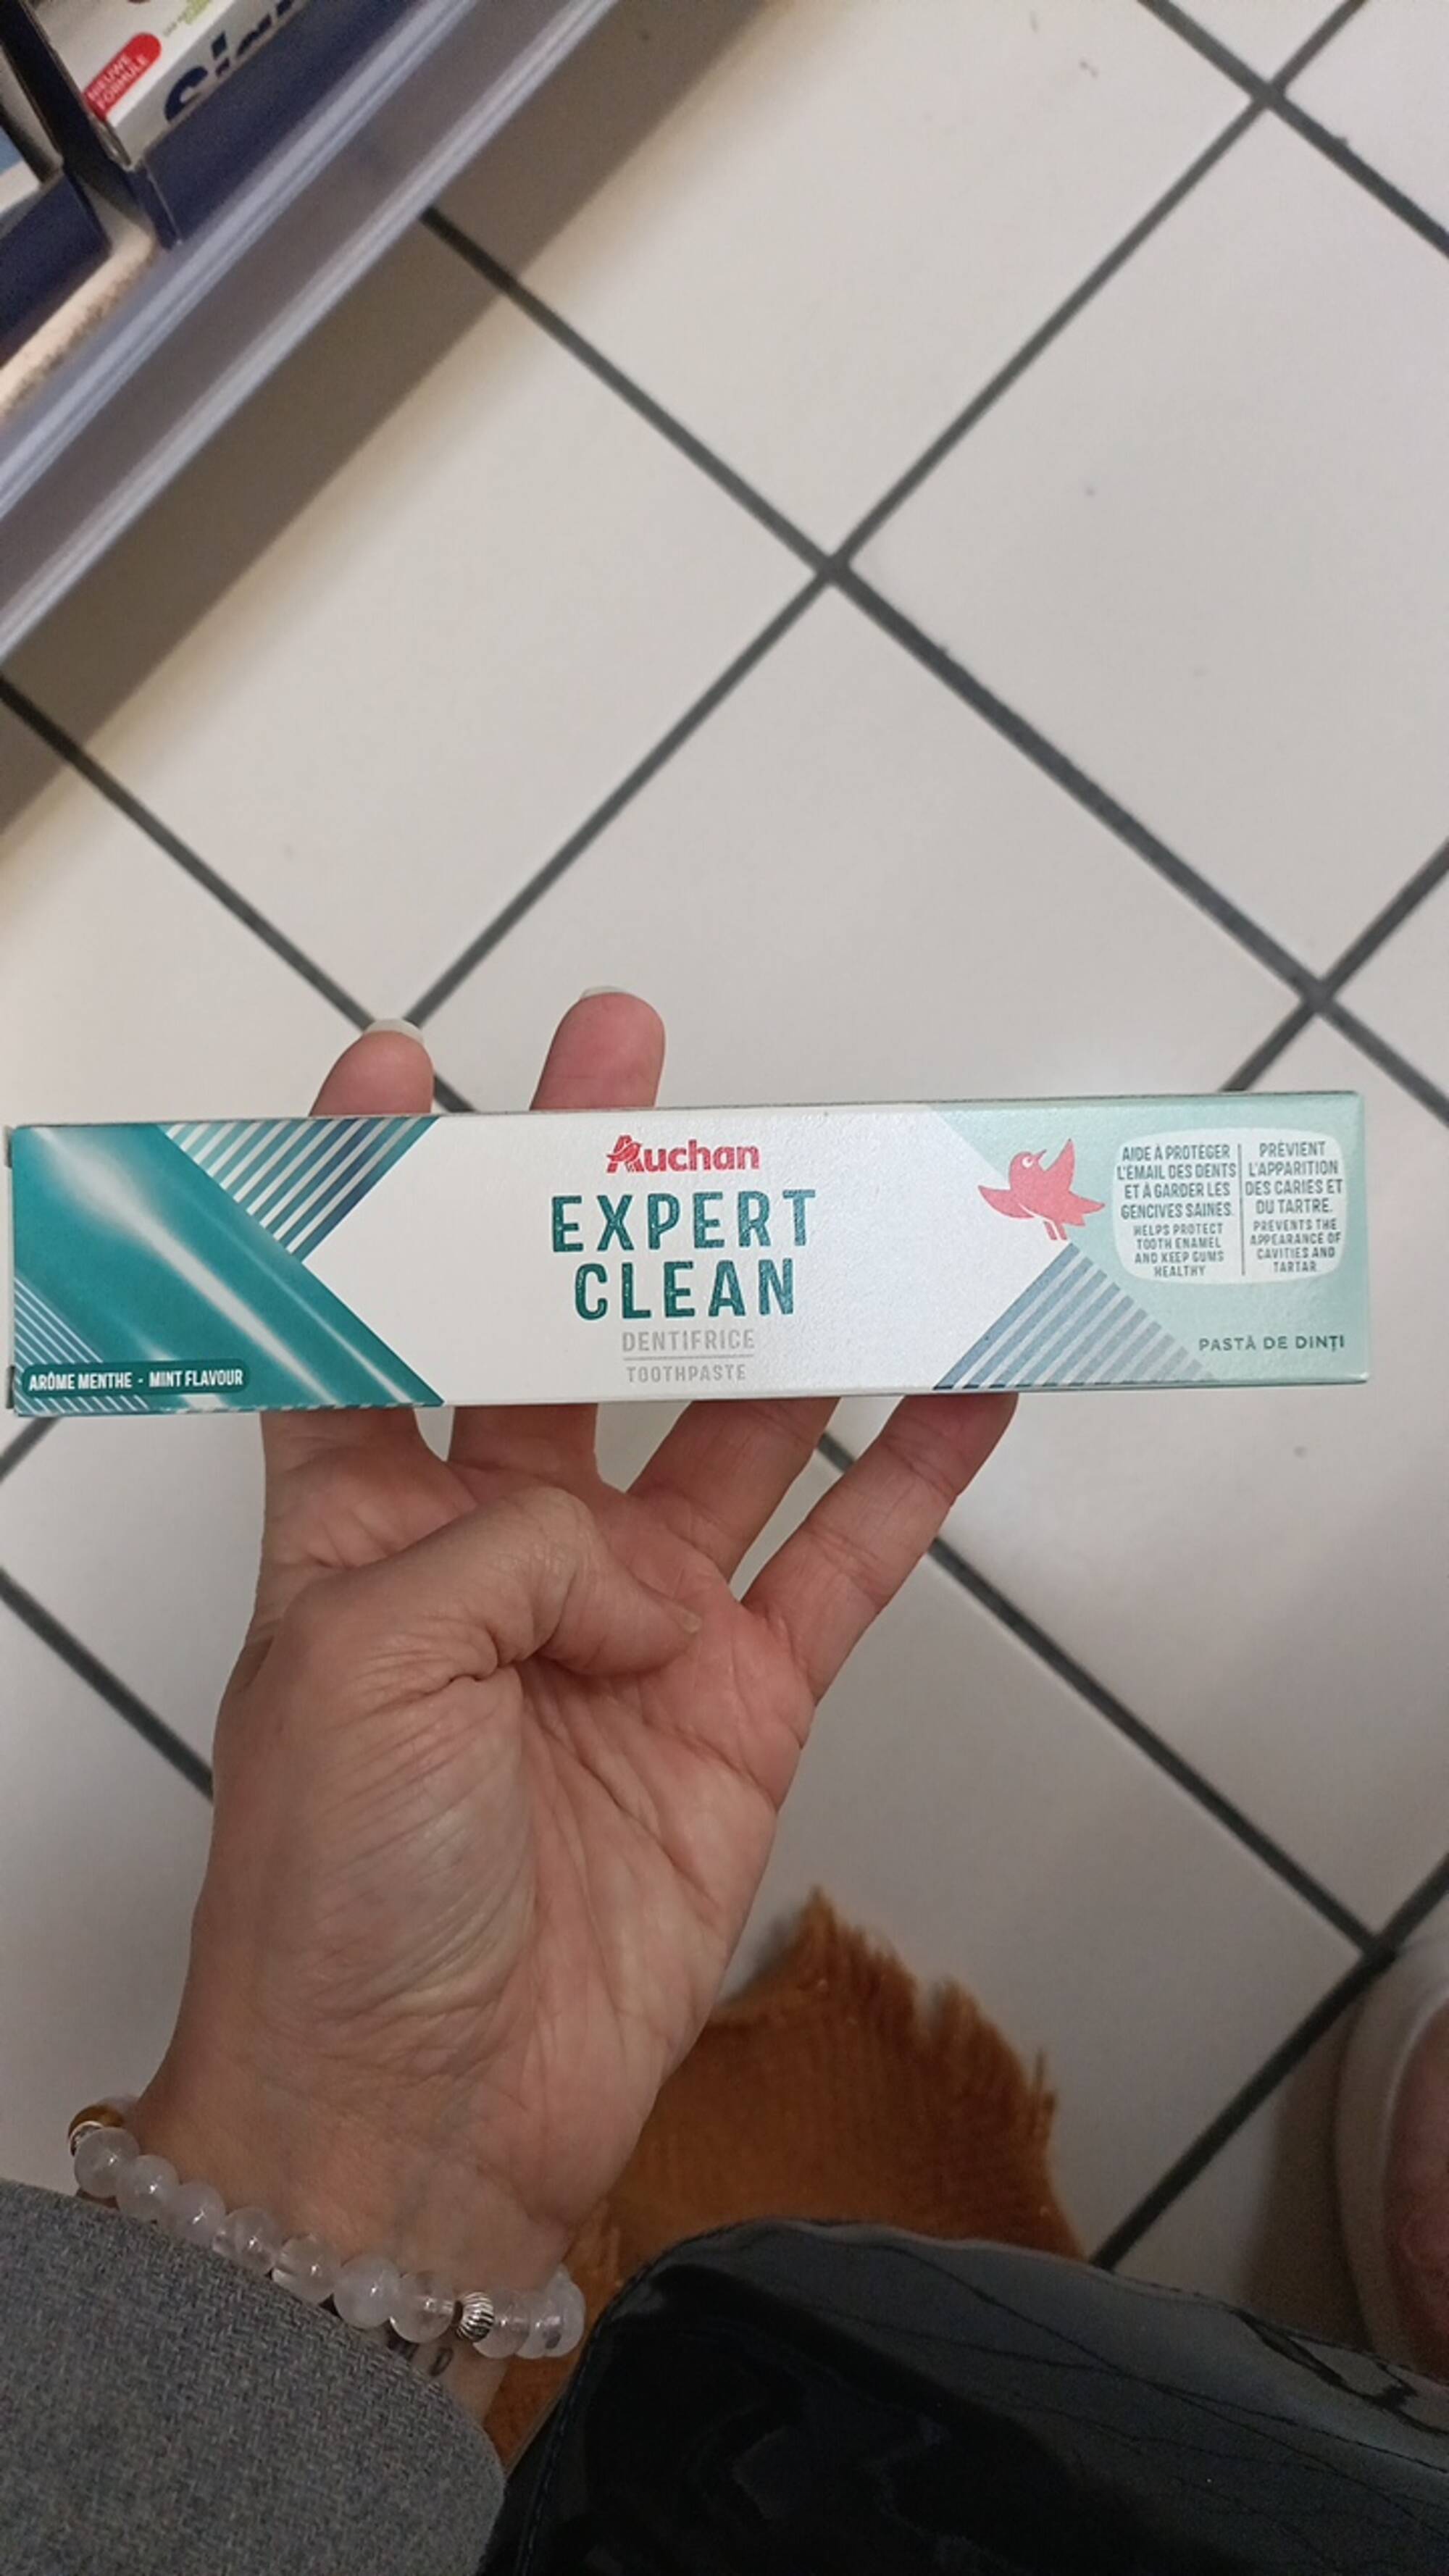 AUCHAN - Expert clean - Dentifrice